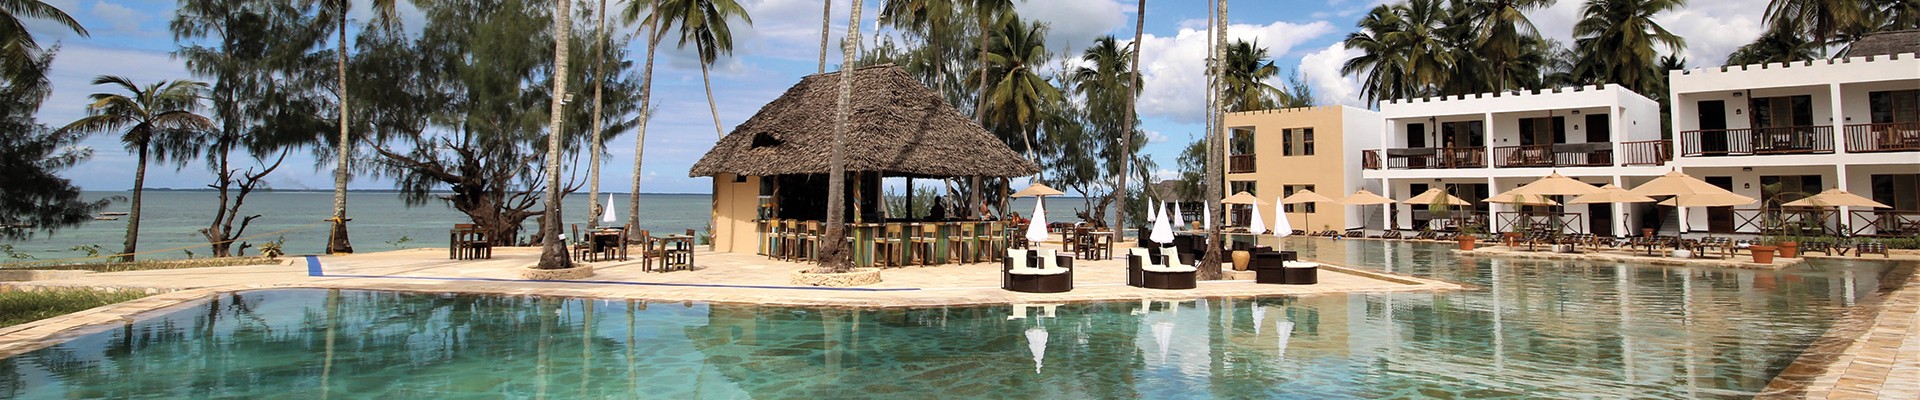 3* Plus Zanzibar Bay Resort - Zanzibar Package (5 Nights)